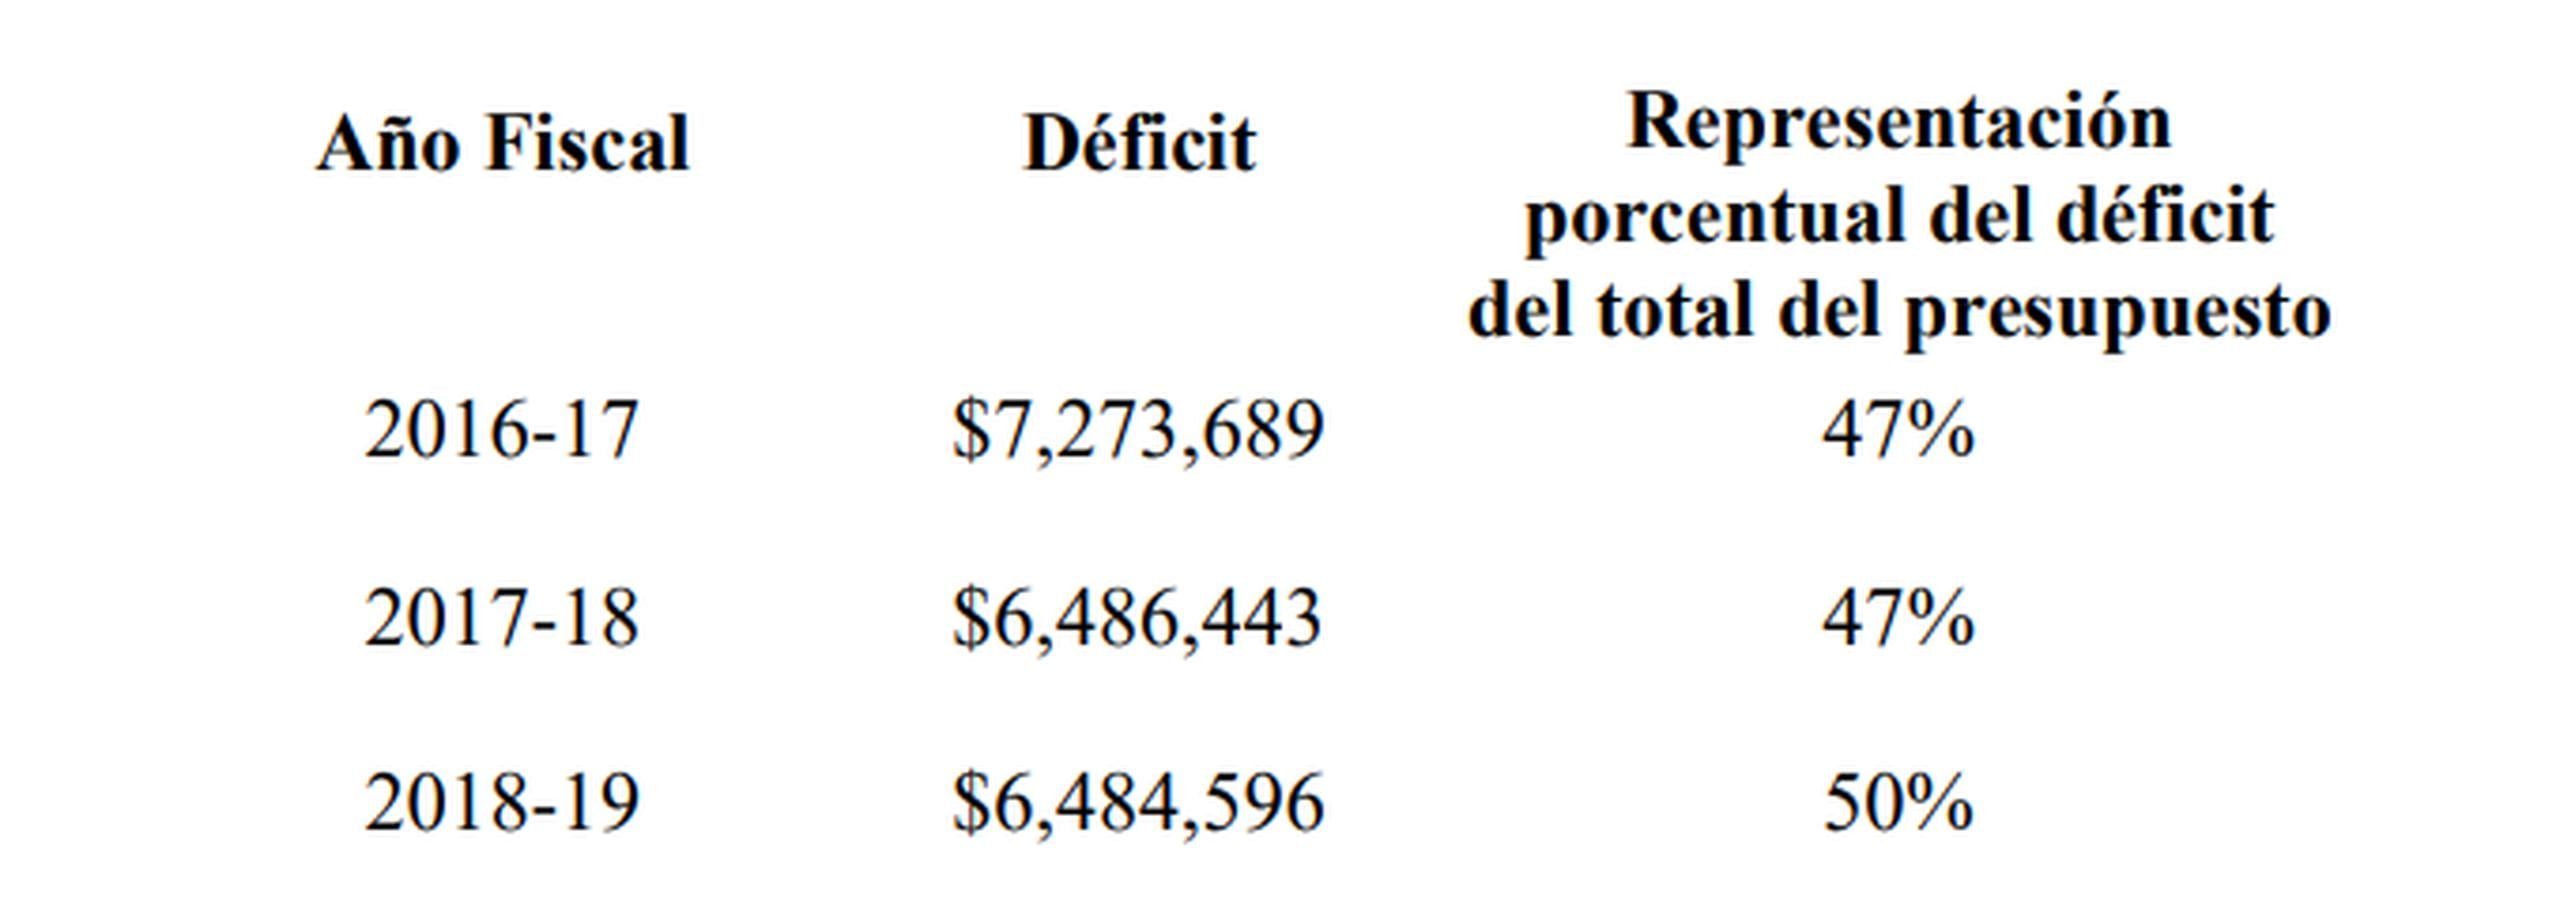 Déficit fiscal del municipio de Yabucoa según informe de la Oficina del Contralor